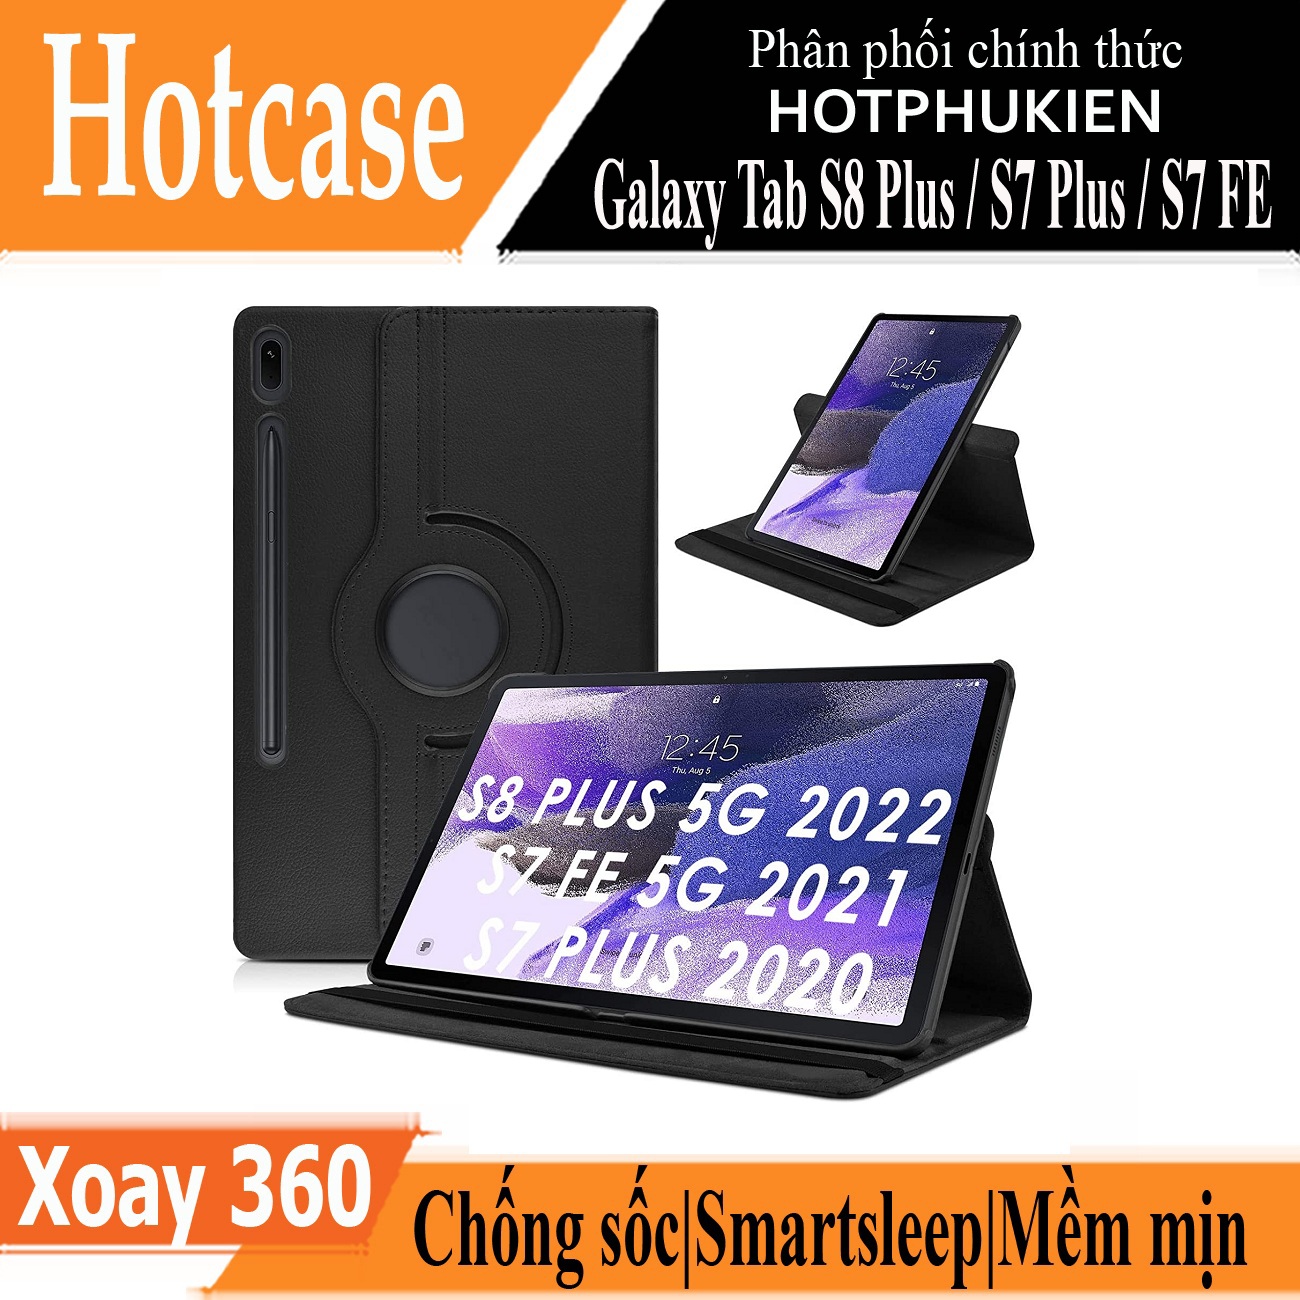 Hình ảnh Case bao da chống sốc xoay 360 độ cho Galaxy Tab S8 Plus /  Tab S7 Plus / Tab S7 FE 12.4 inch hiệu HOTCASE (thiết kế siêu mỏng hỗ trợ Smartsleep, gập nhiều tư thế, tản nhiệt tốt) - hàng nhập khẩu